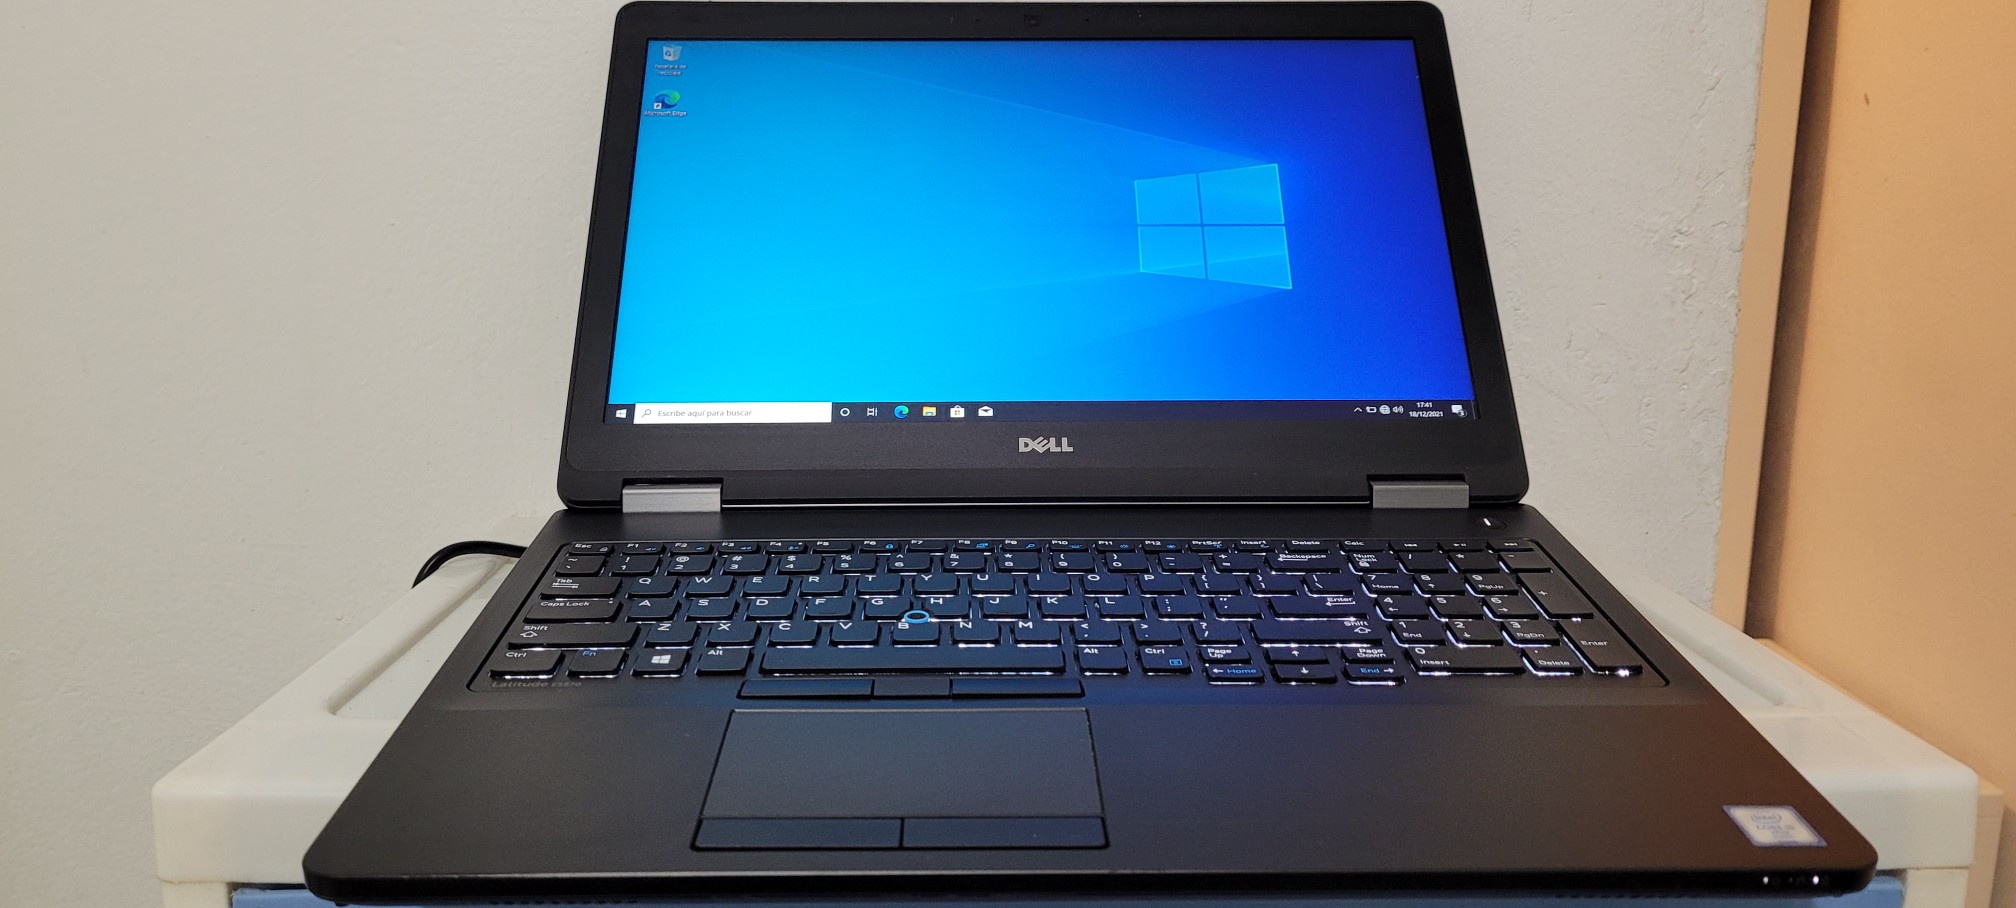 computadoras y laptops - Dell 5570 17 Pulg Core i5 6ta Gen Ram 8gb ddr4 Disco 128gb SSD Y 320GB New